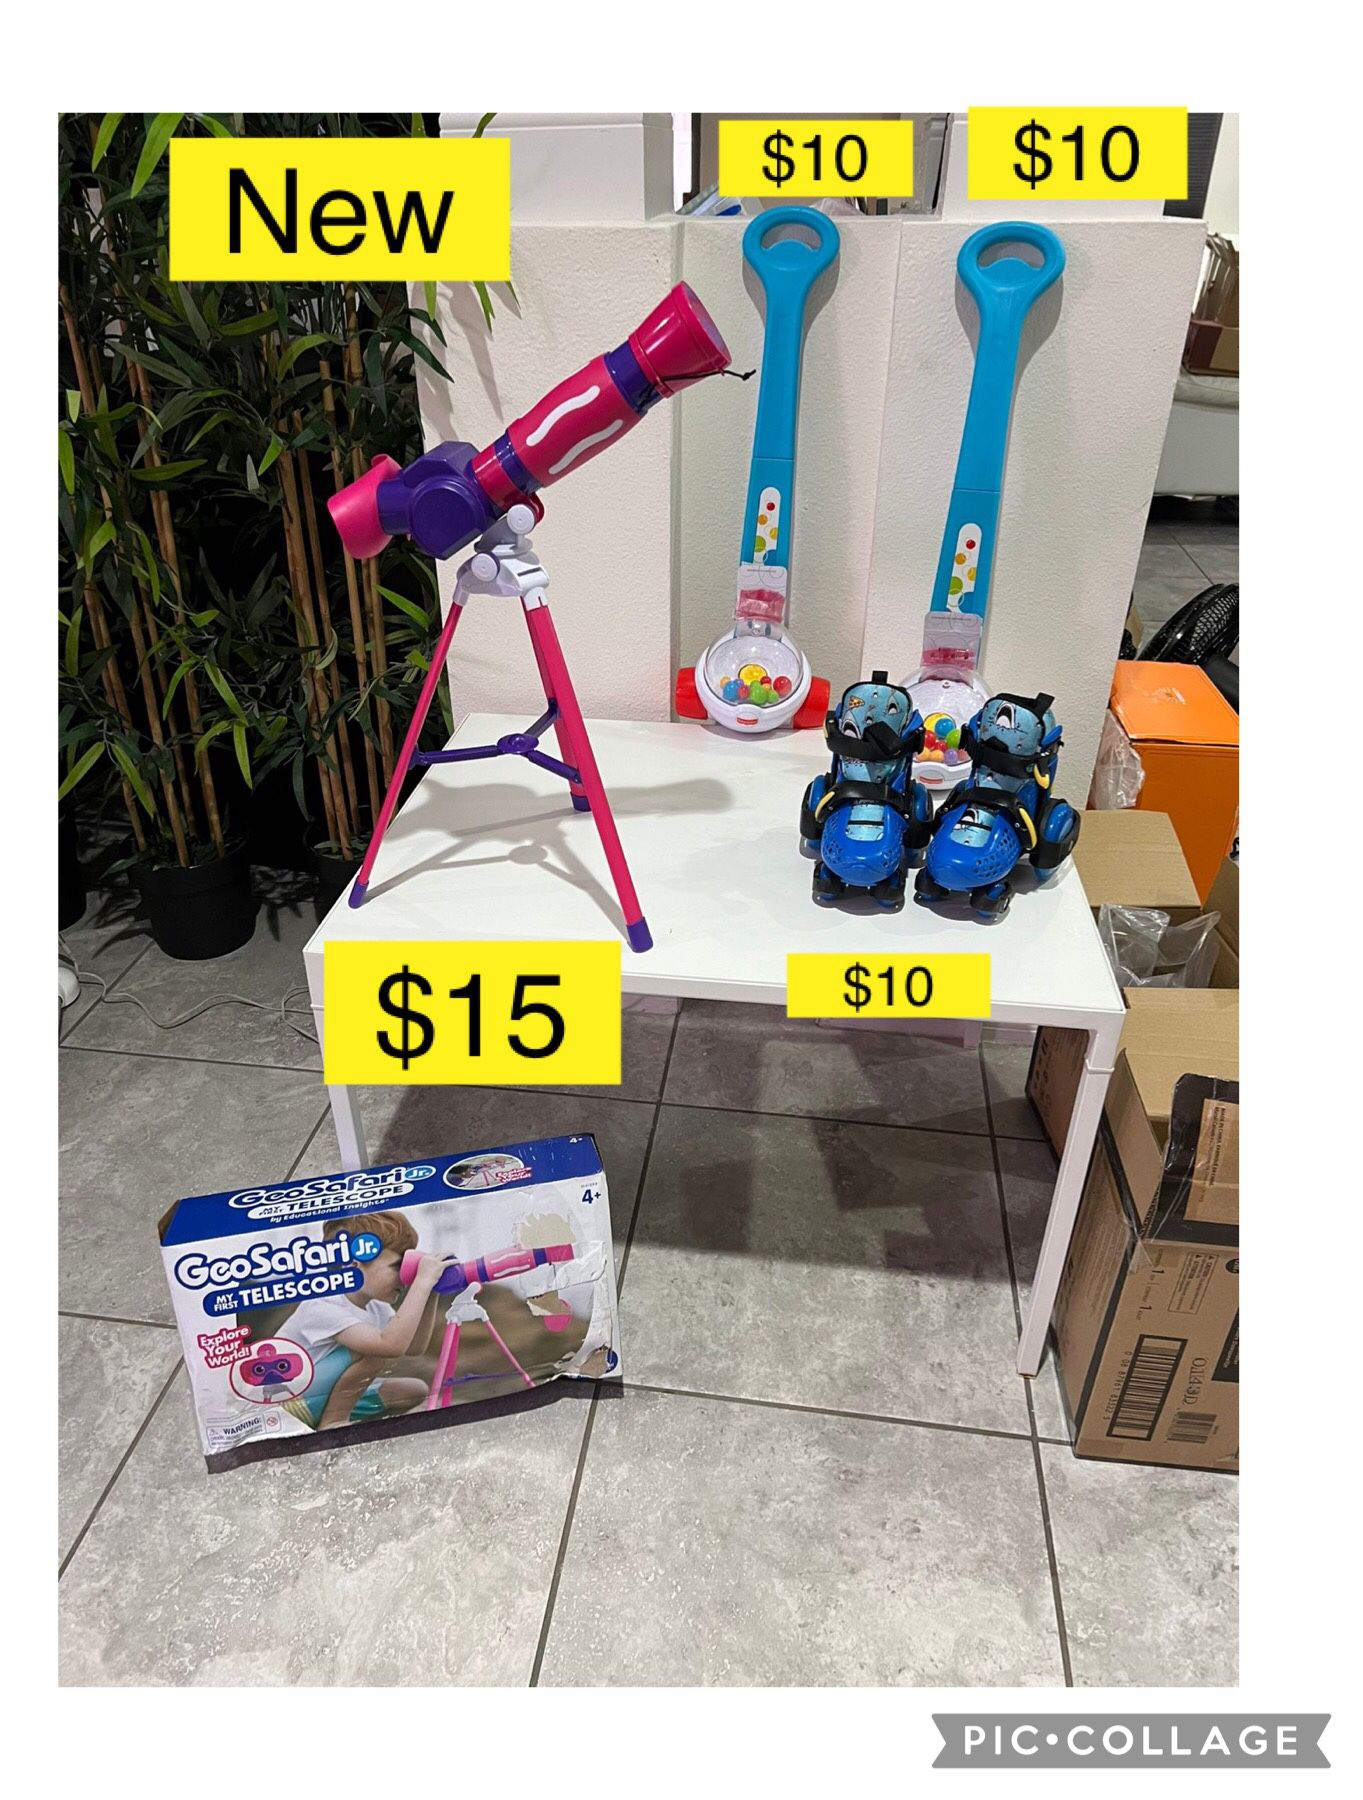 New toys baby corn popper, toddler roller skates 4 wheels / Nuevos juguetes bebe, telescopio y patines